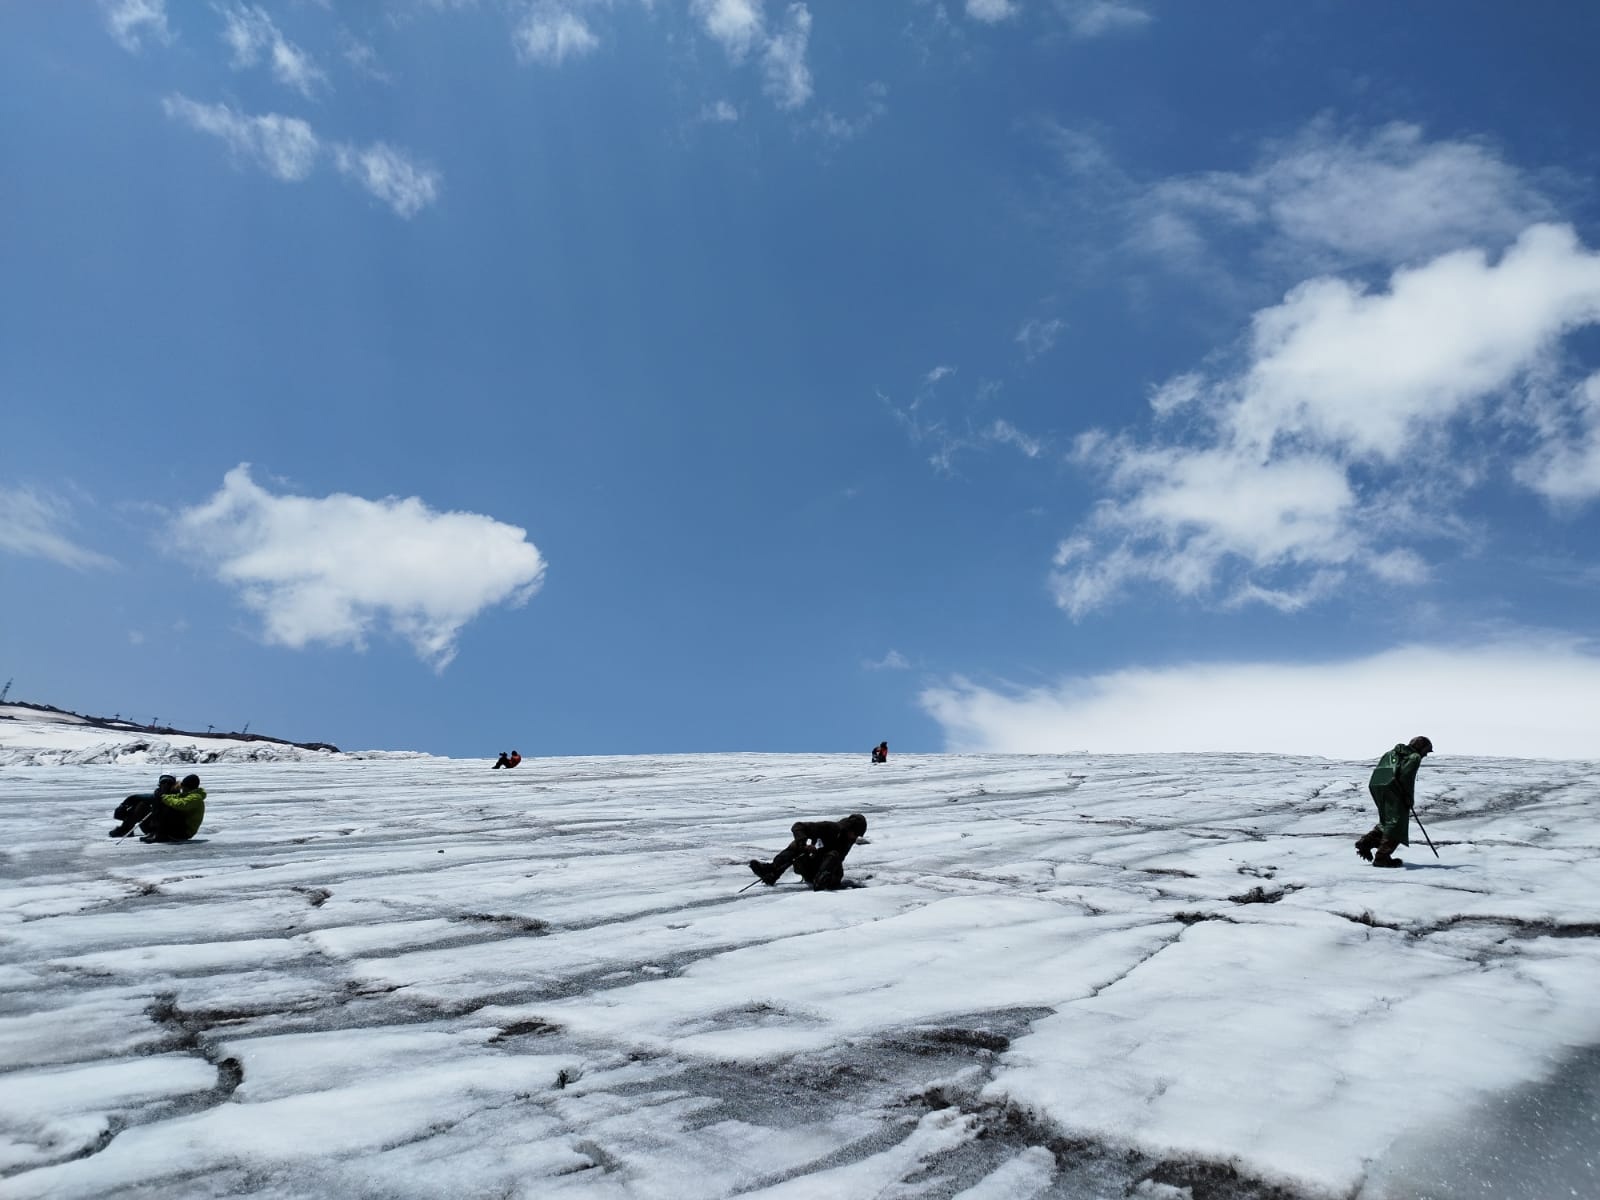 Останки двух красноармейцев обнаружили на склонах Эльбруса армавирцы в составе поискового отряда